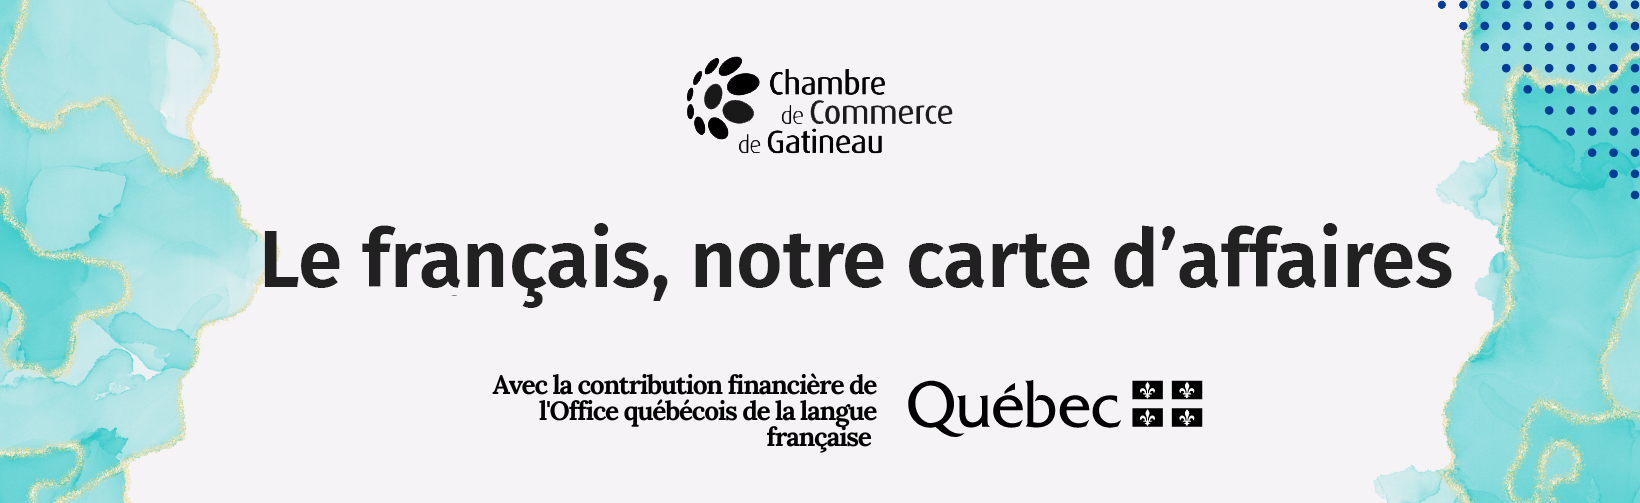 Le français, notre carte d'affaires - Chambre de commerce de Gatineau